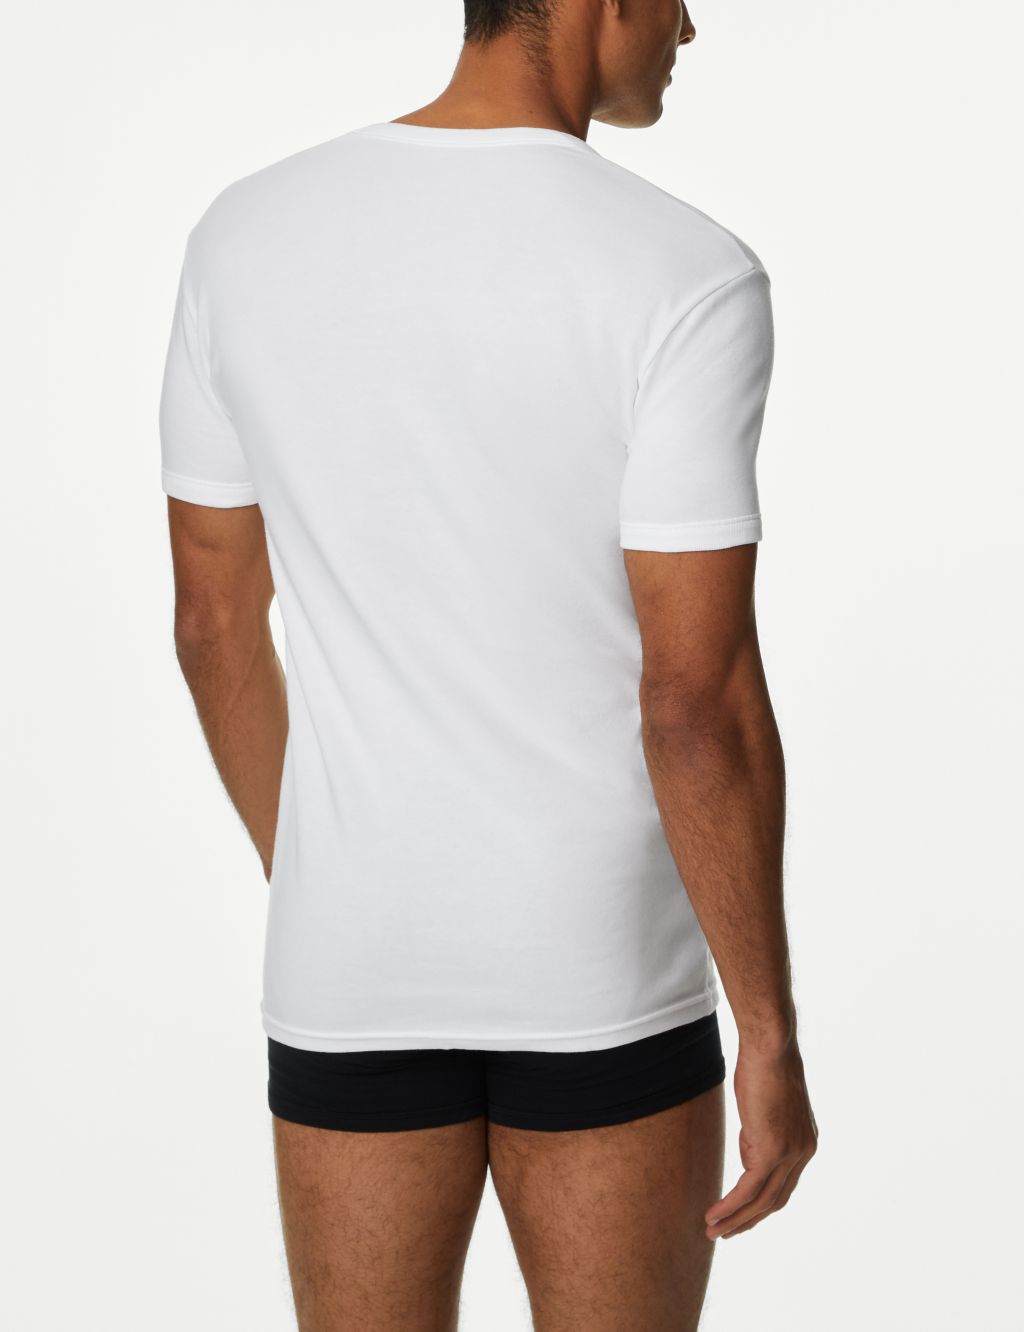 3pk Pure Cotton T-Shirt Vests image 3